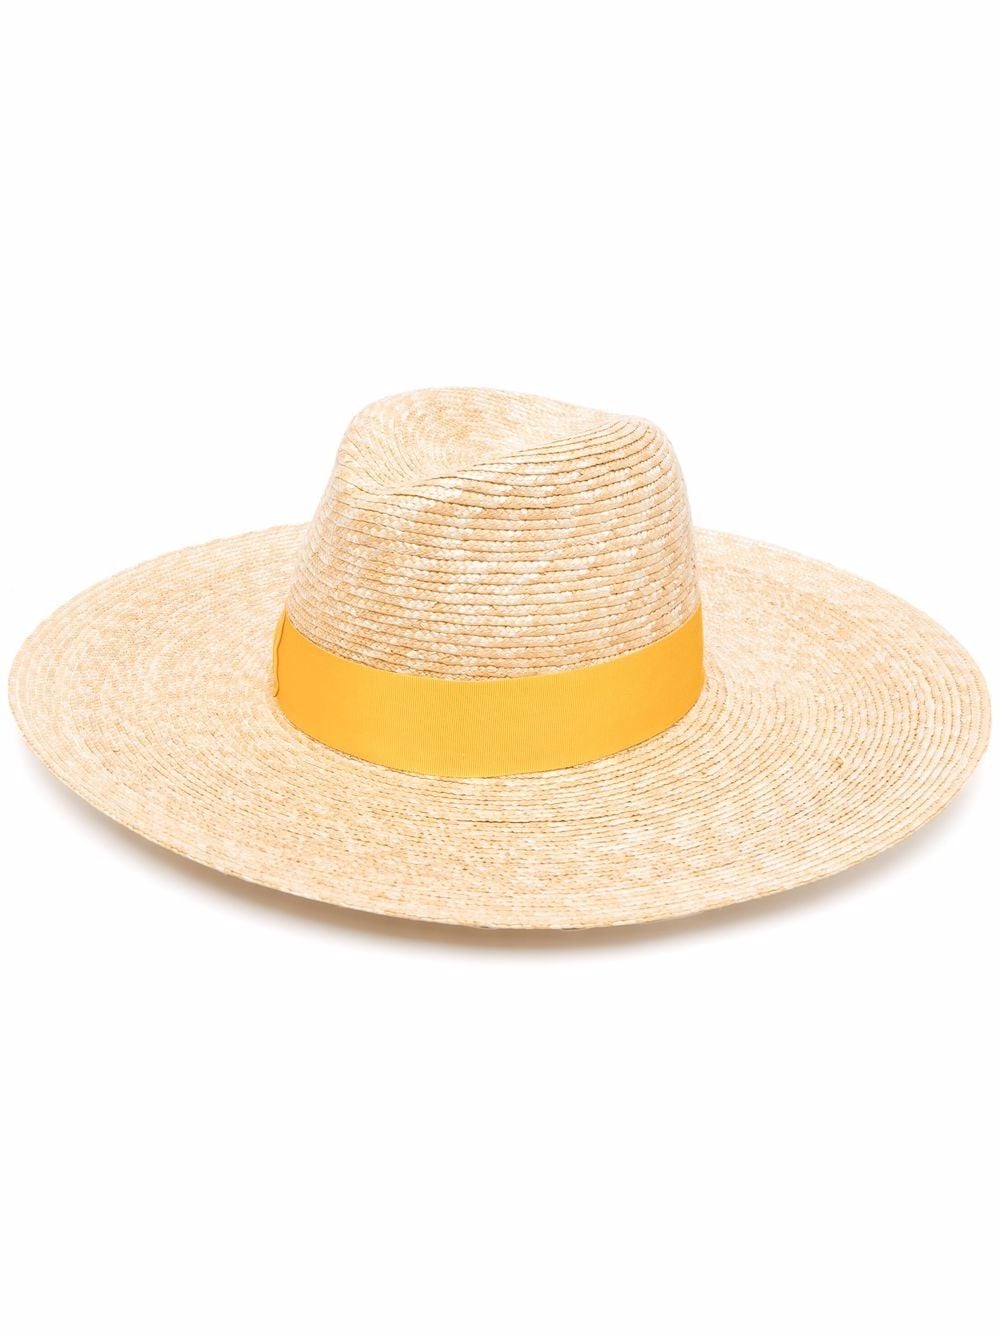 Borsalino Sophie straw hat - Neutrals von Borsalino